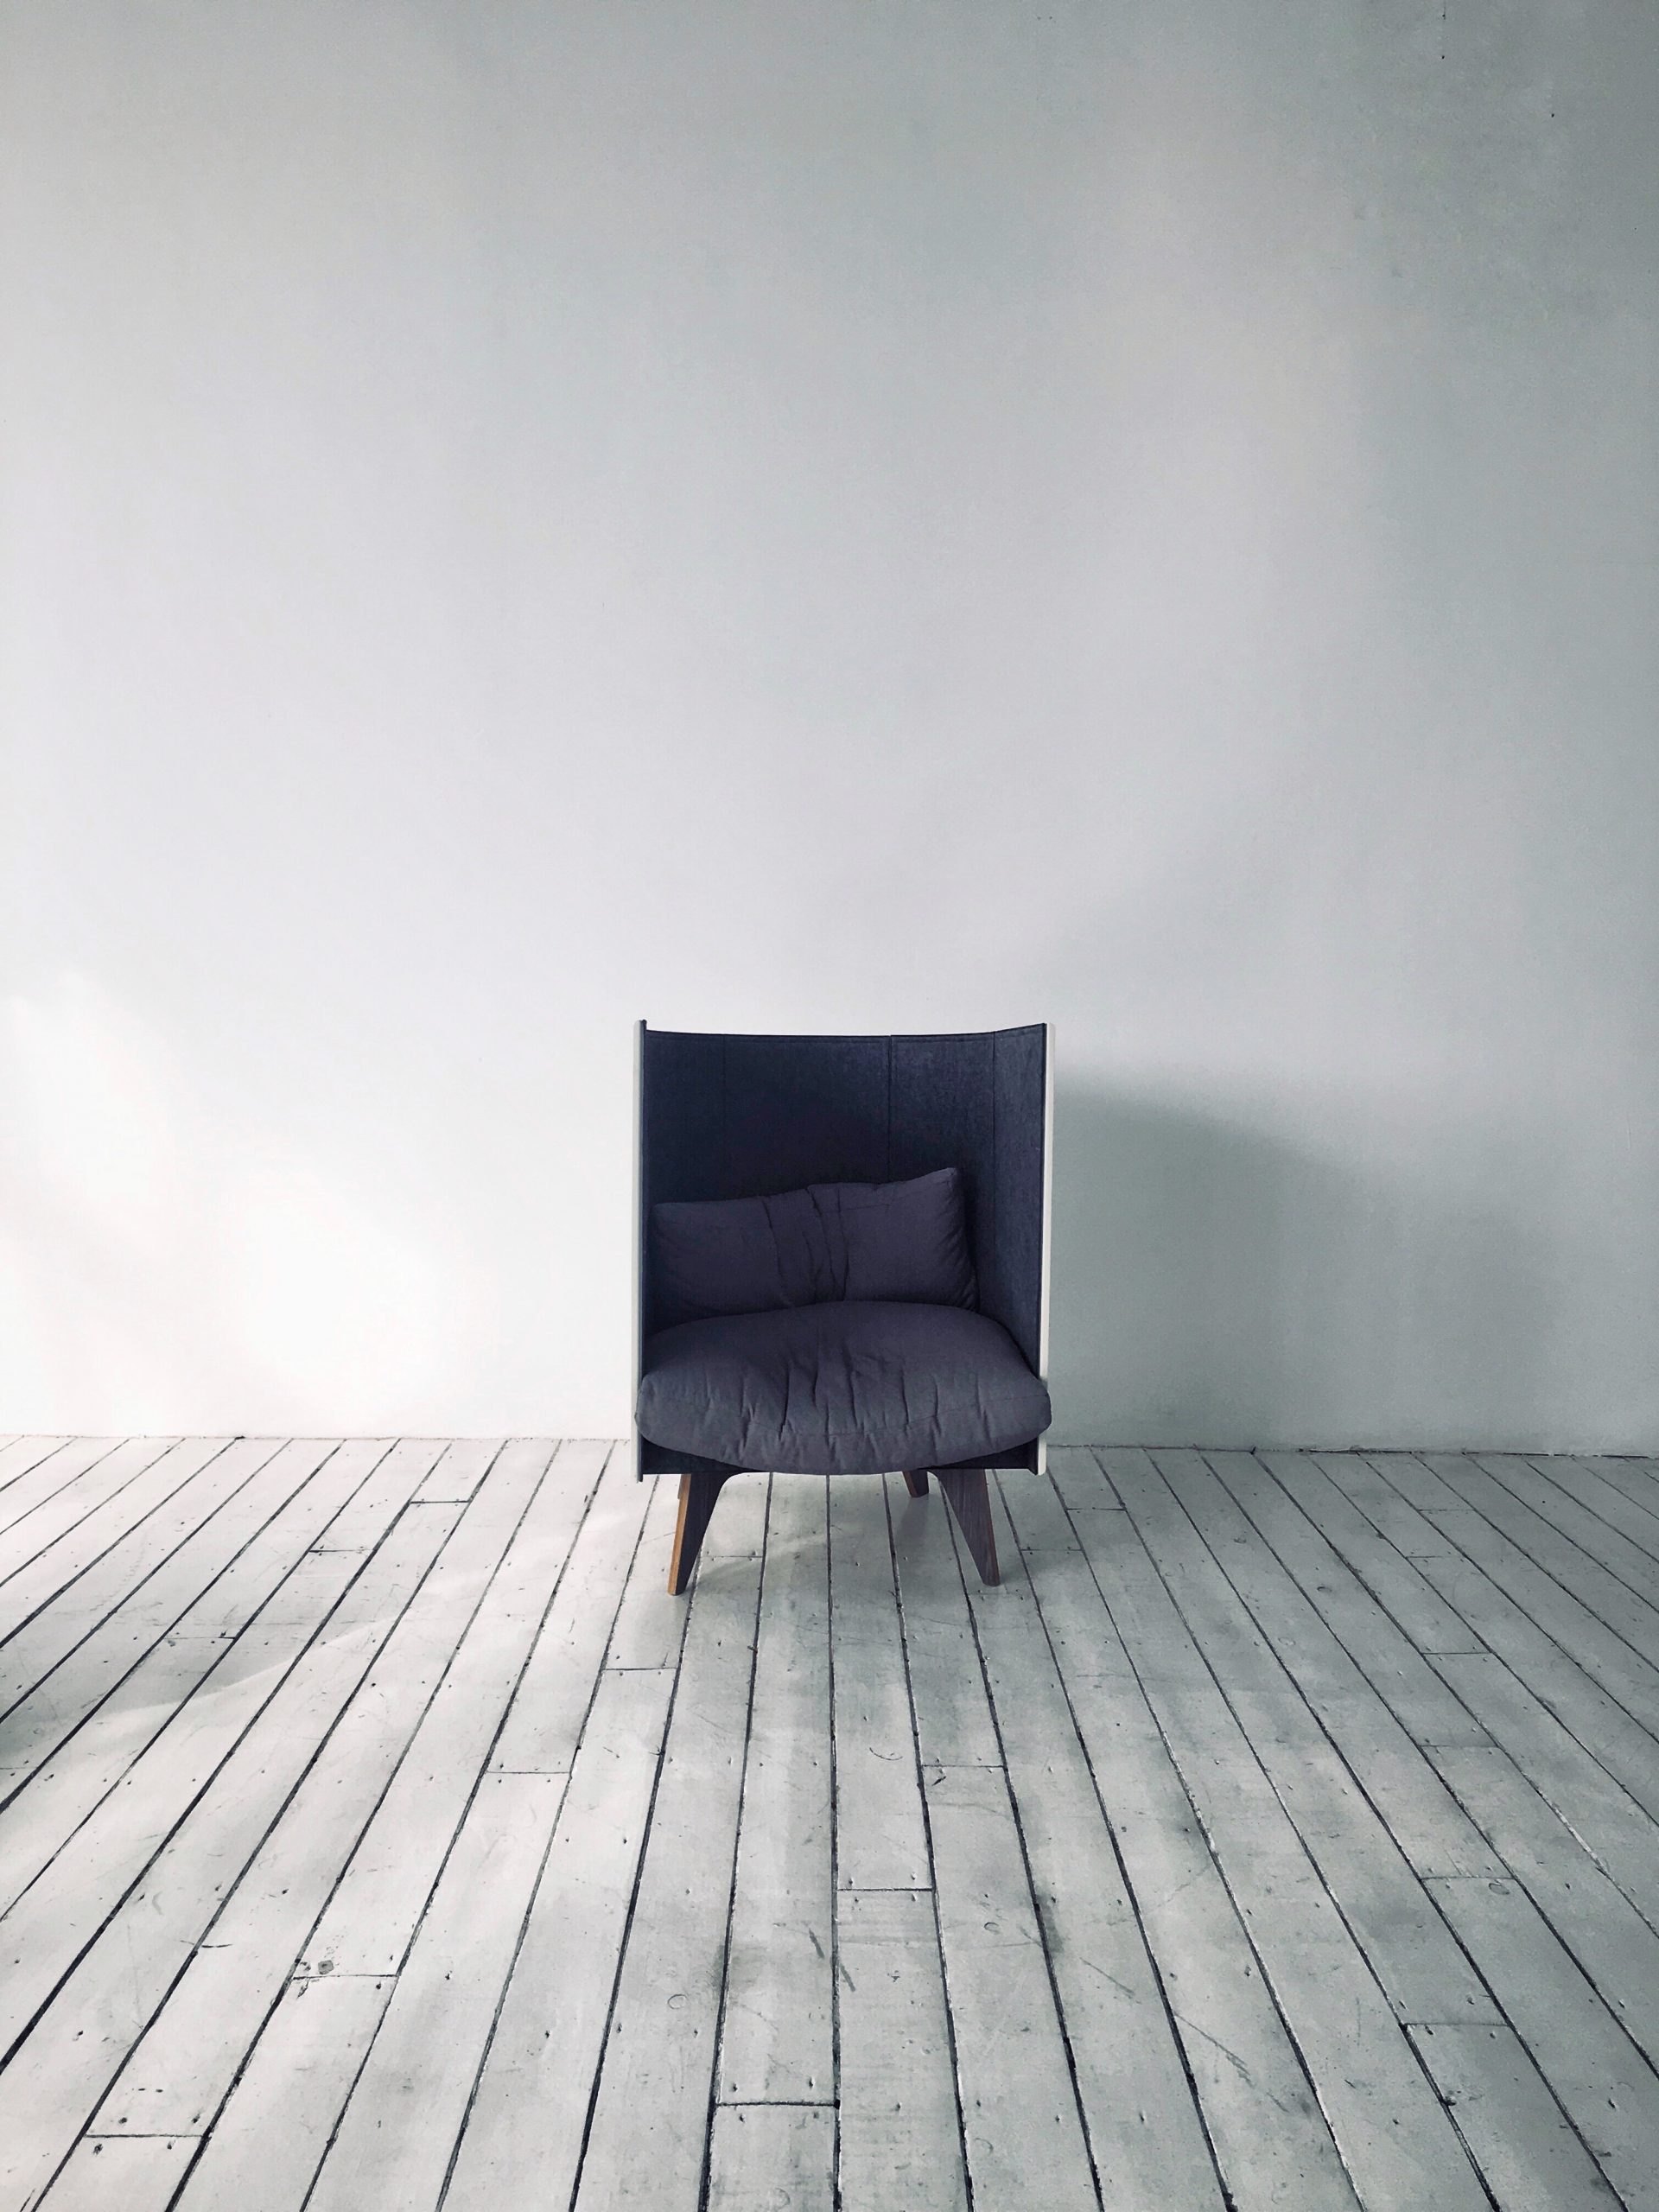 minimalism-design-2021-08-29-23-25-54-utc